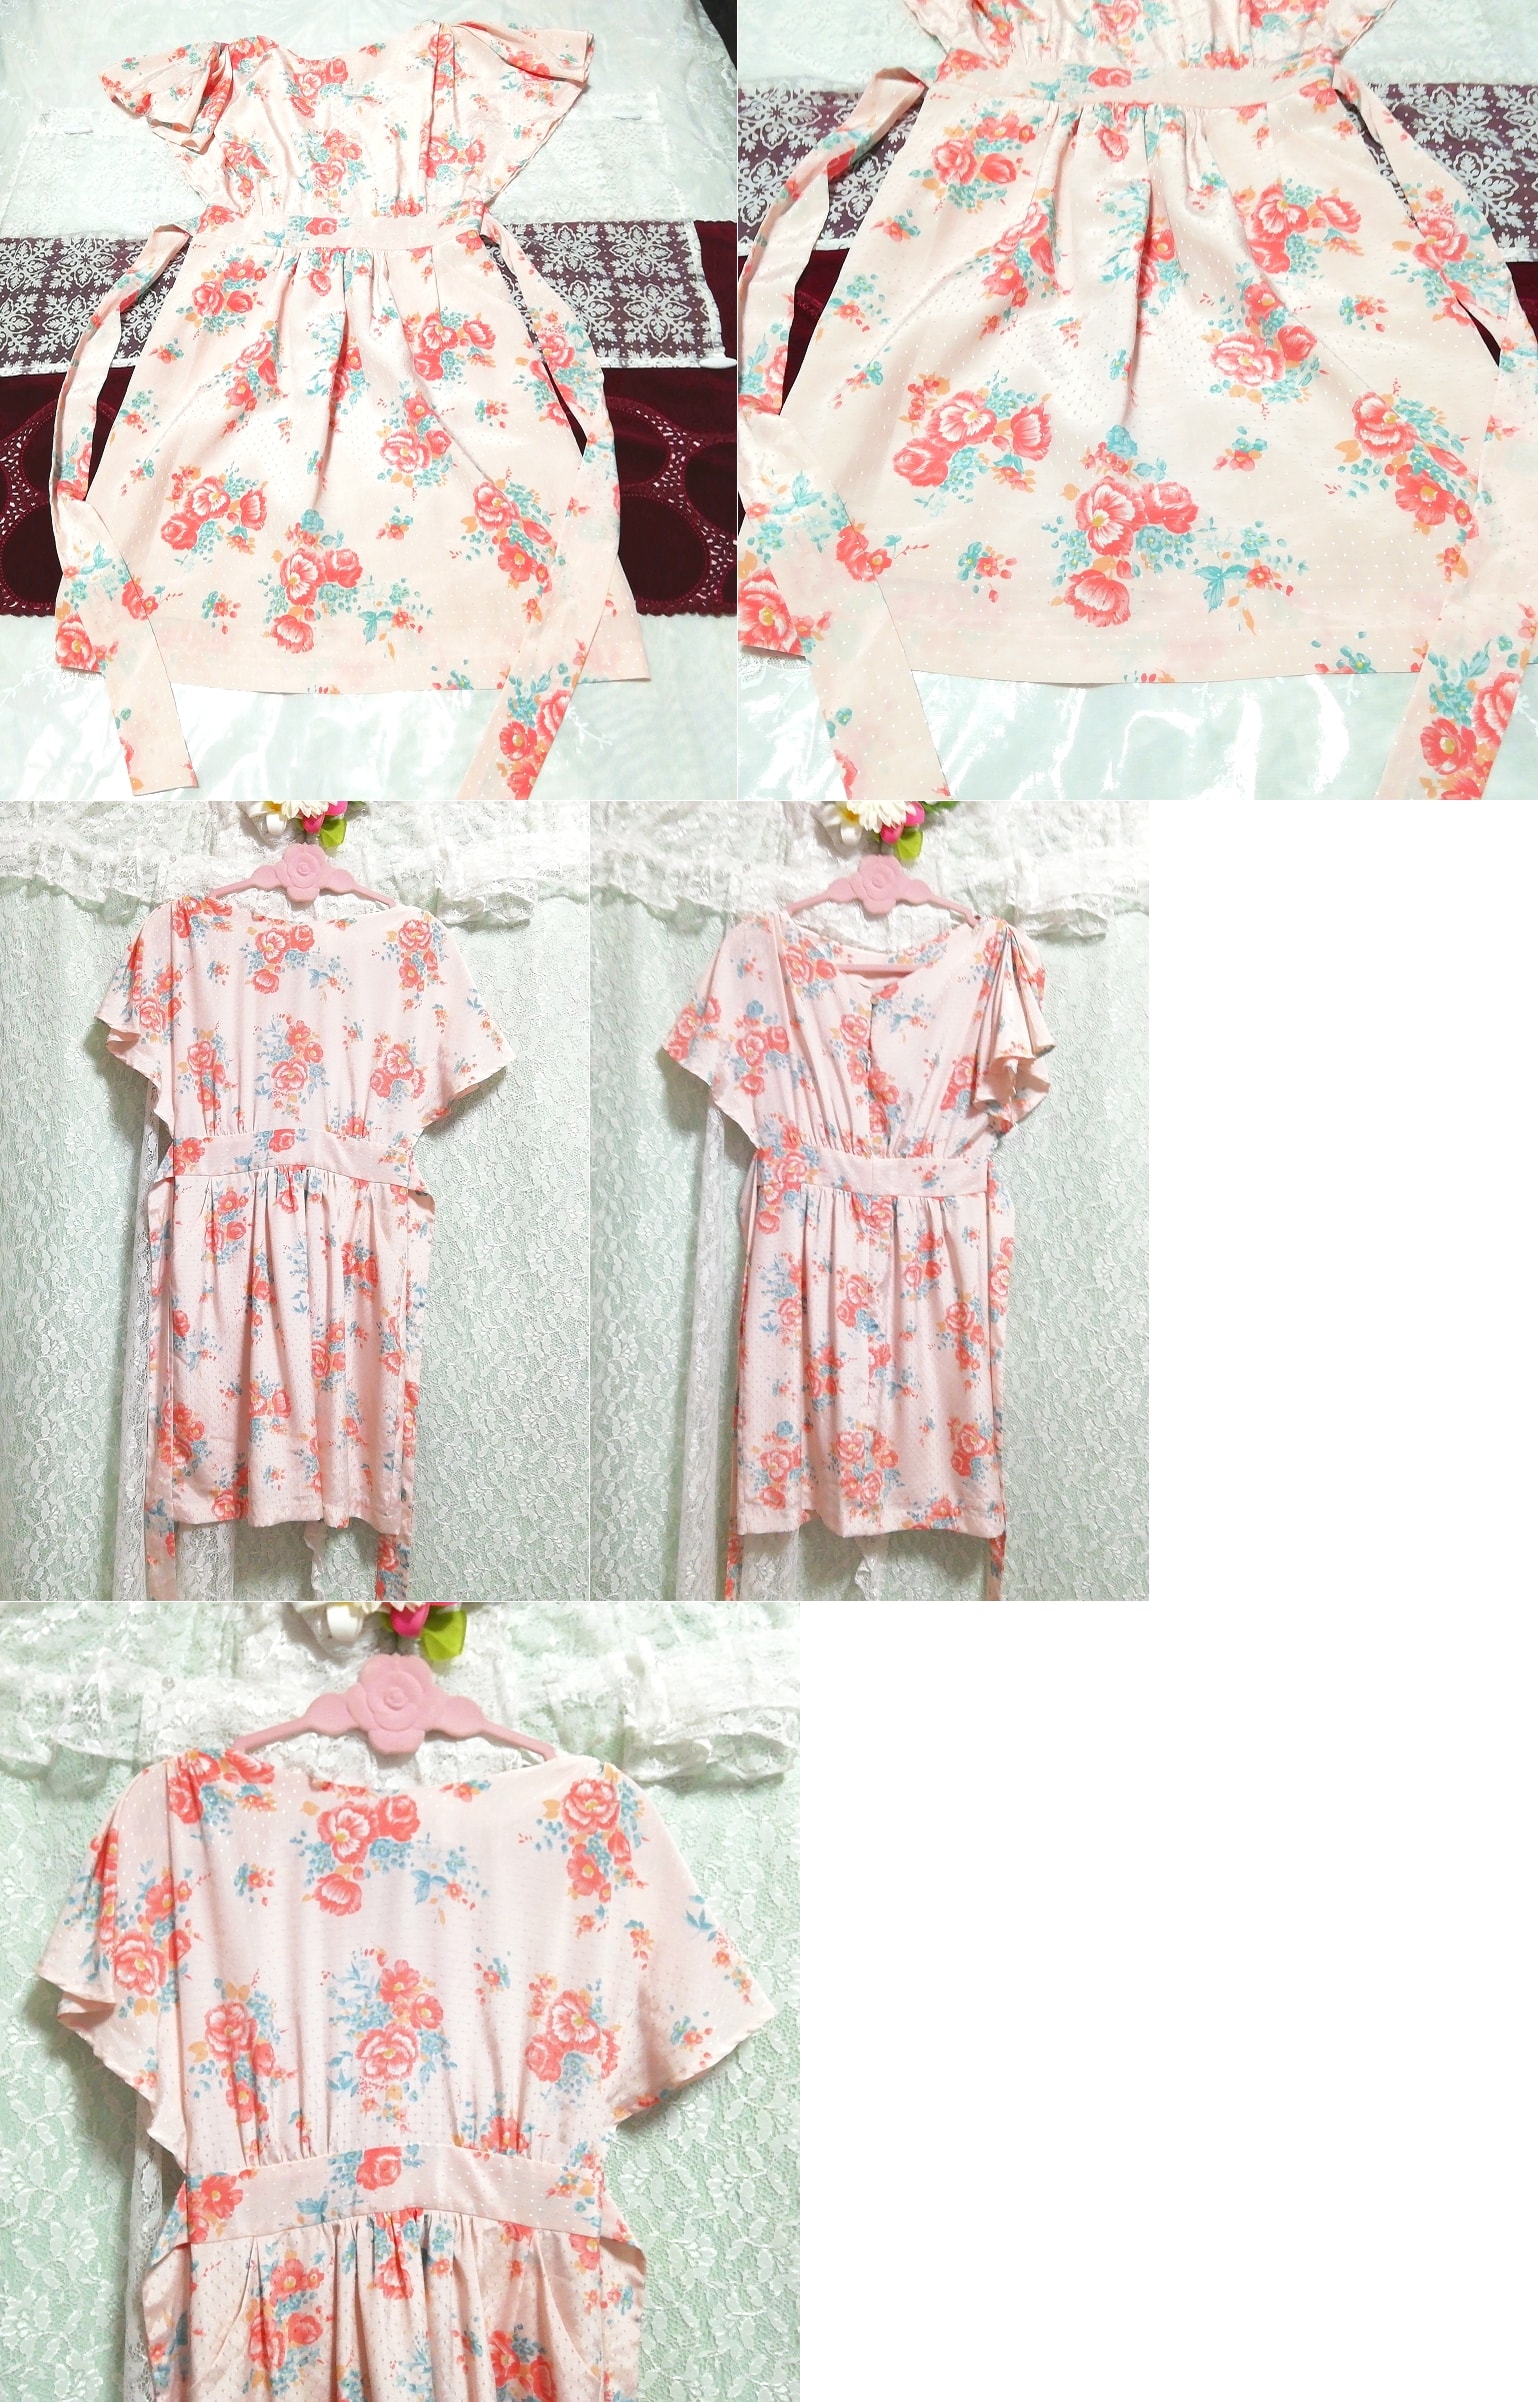 ピンク花柄ネグリジェチュニックワンピース Pink floral pattern negligee tunic dress, ワンピース, ひざ丈スカート, Mサイズ